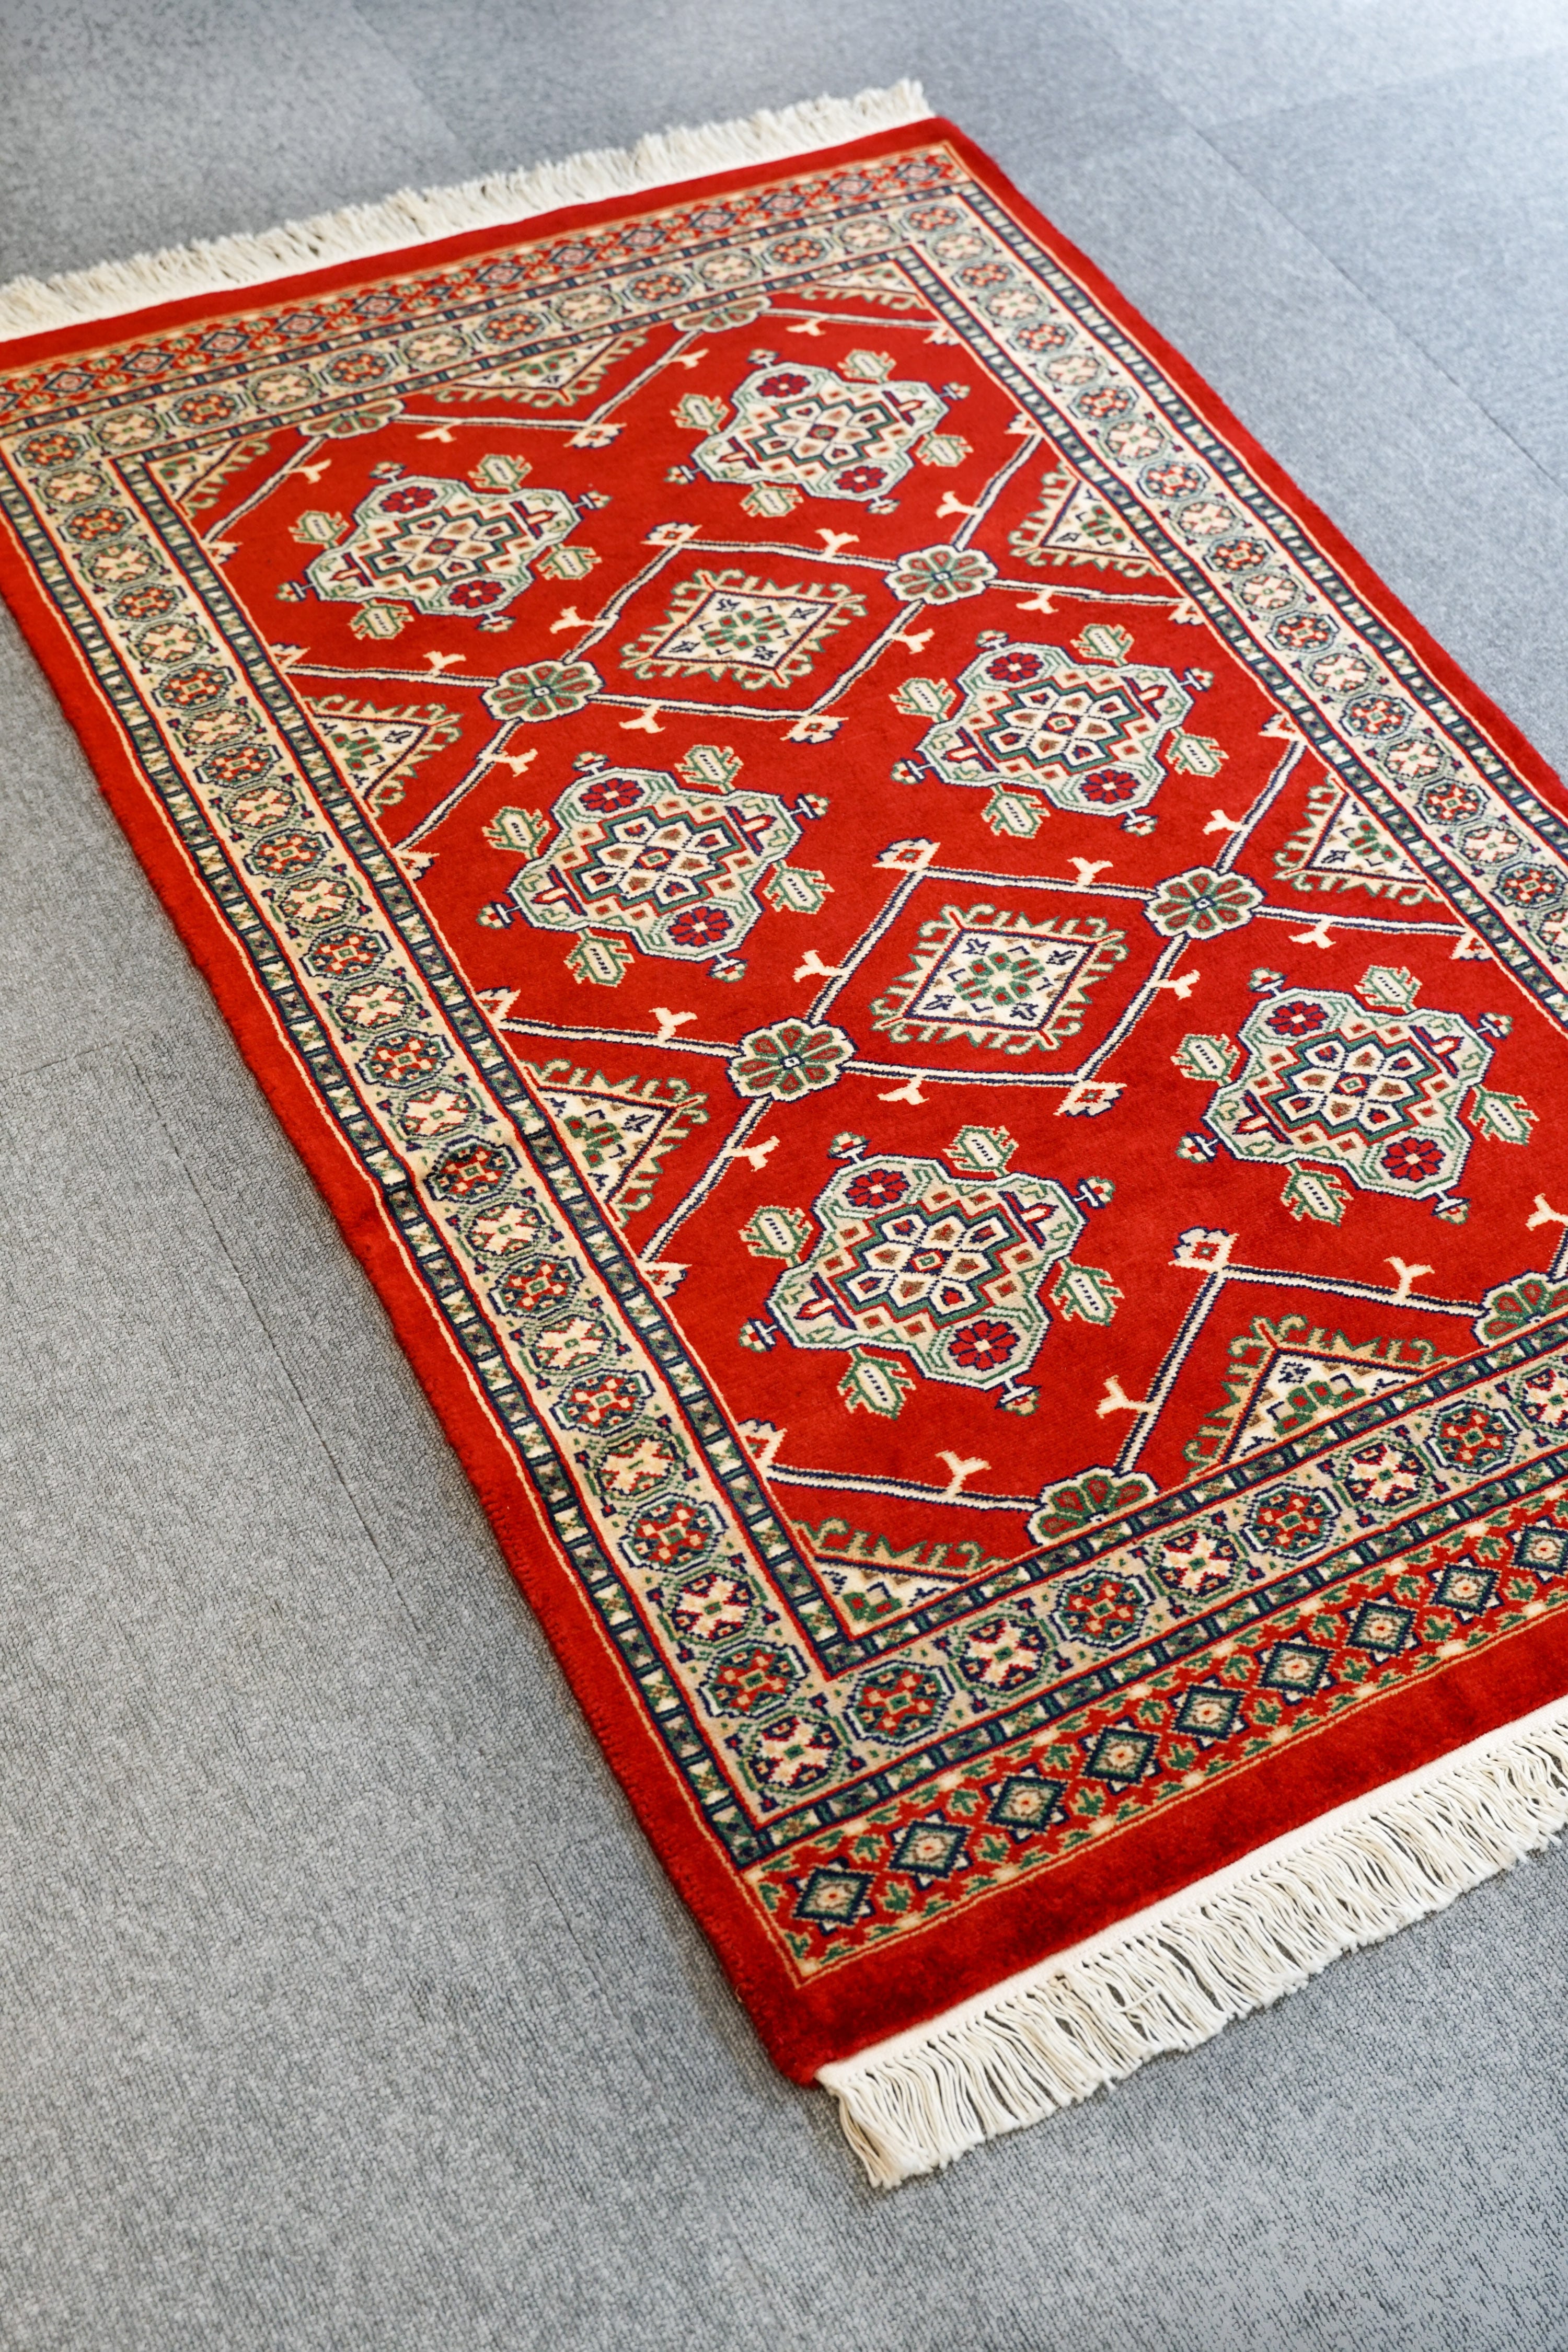 120×78cm【パキスタン手織り絨毯】 | Decorworks